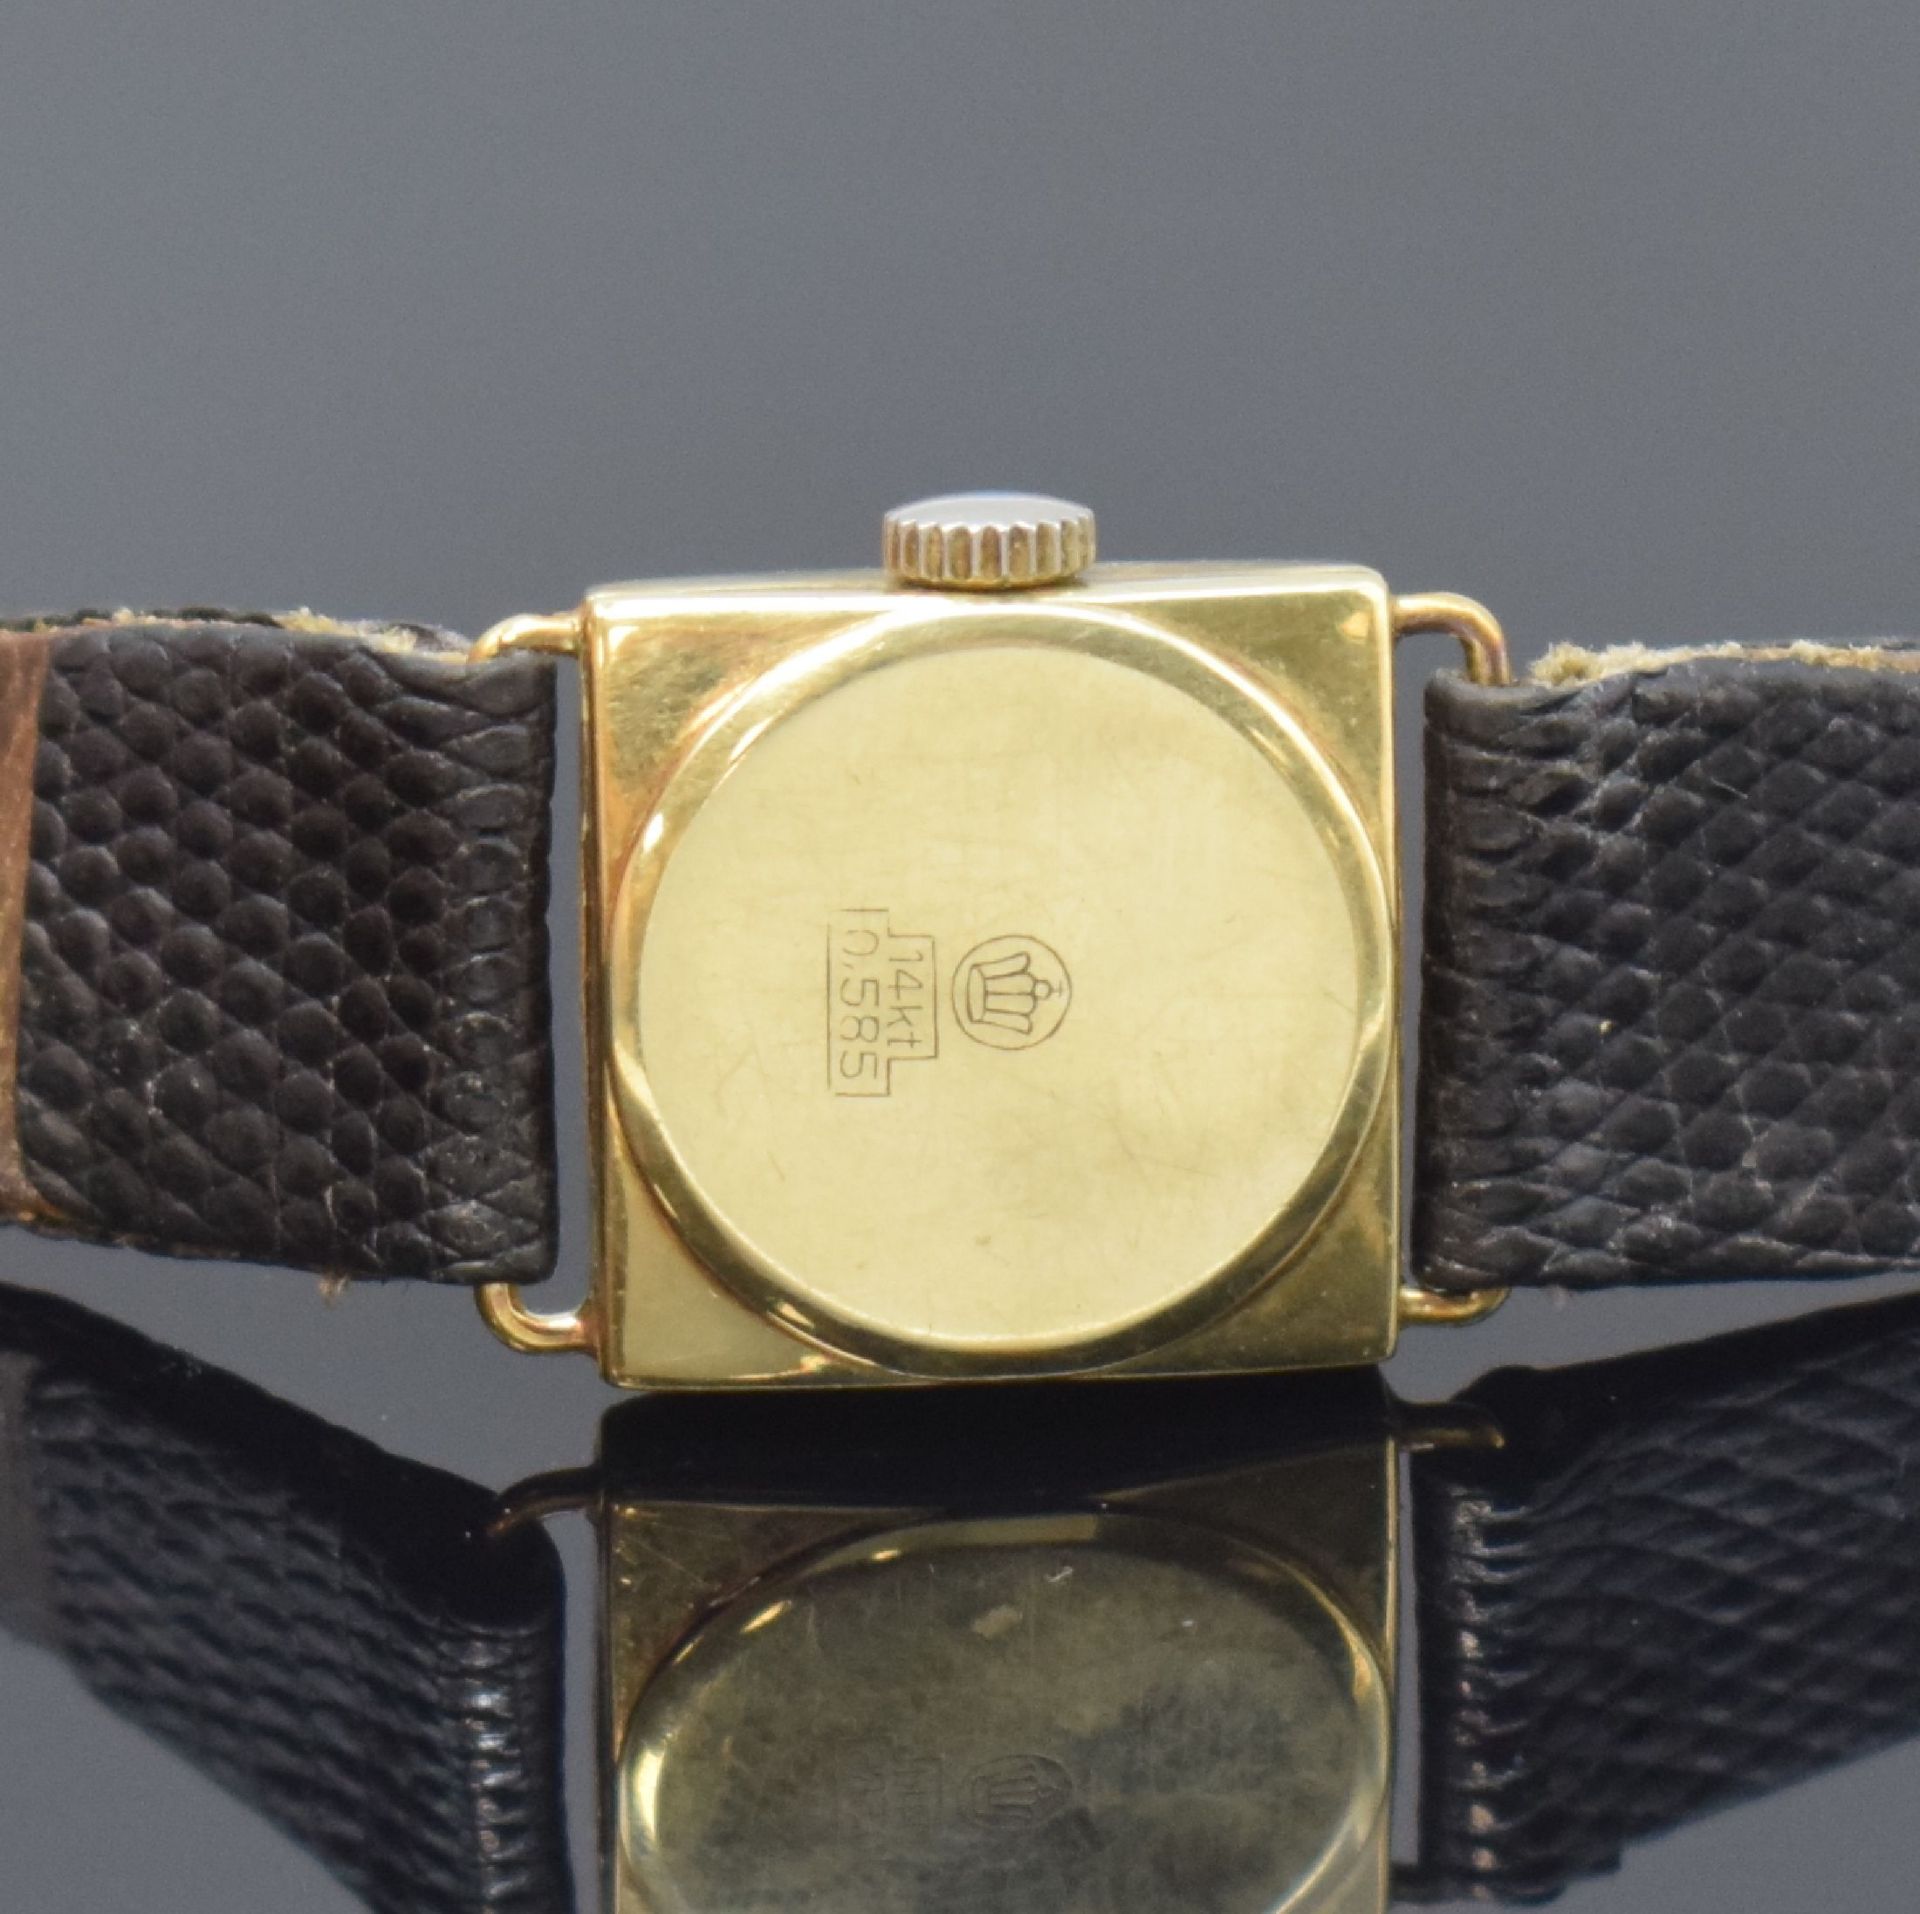 GLYCINE und DUCADO 2 Damenarmbanduhren in 925er Silber und - Image 6 of 6